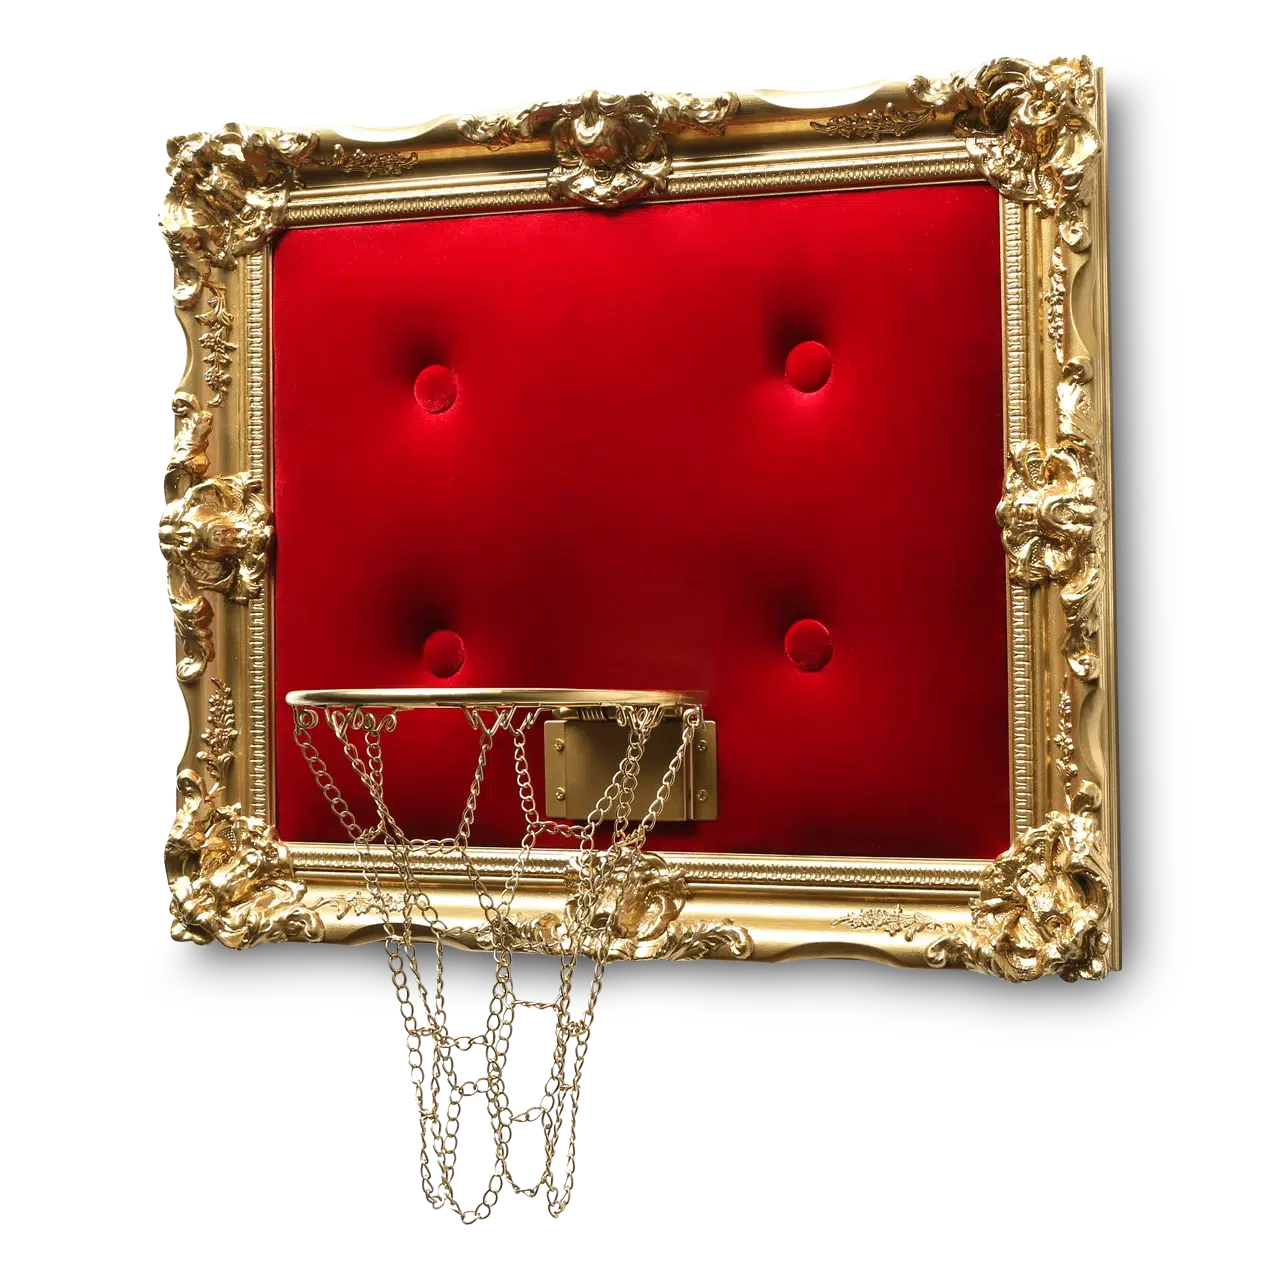 A Red Velvet Hoop with a frame made of velvet.